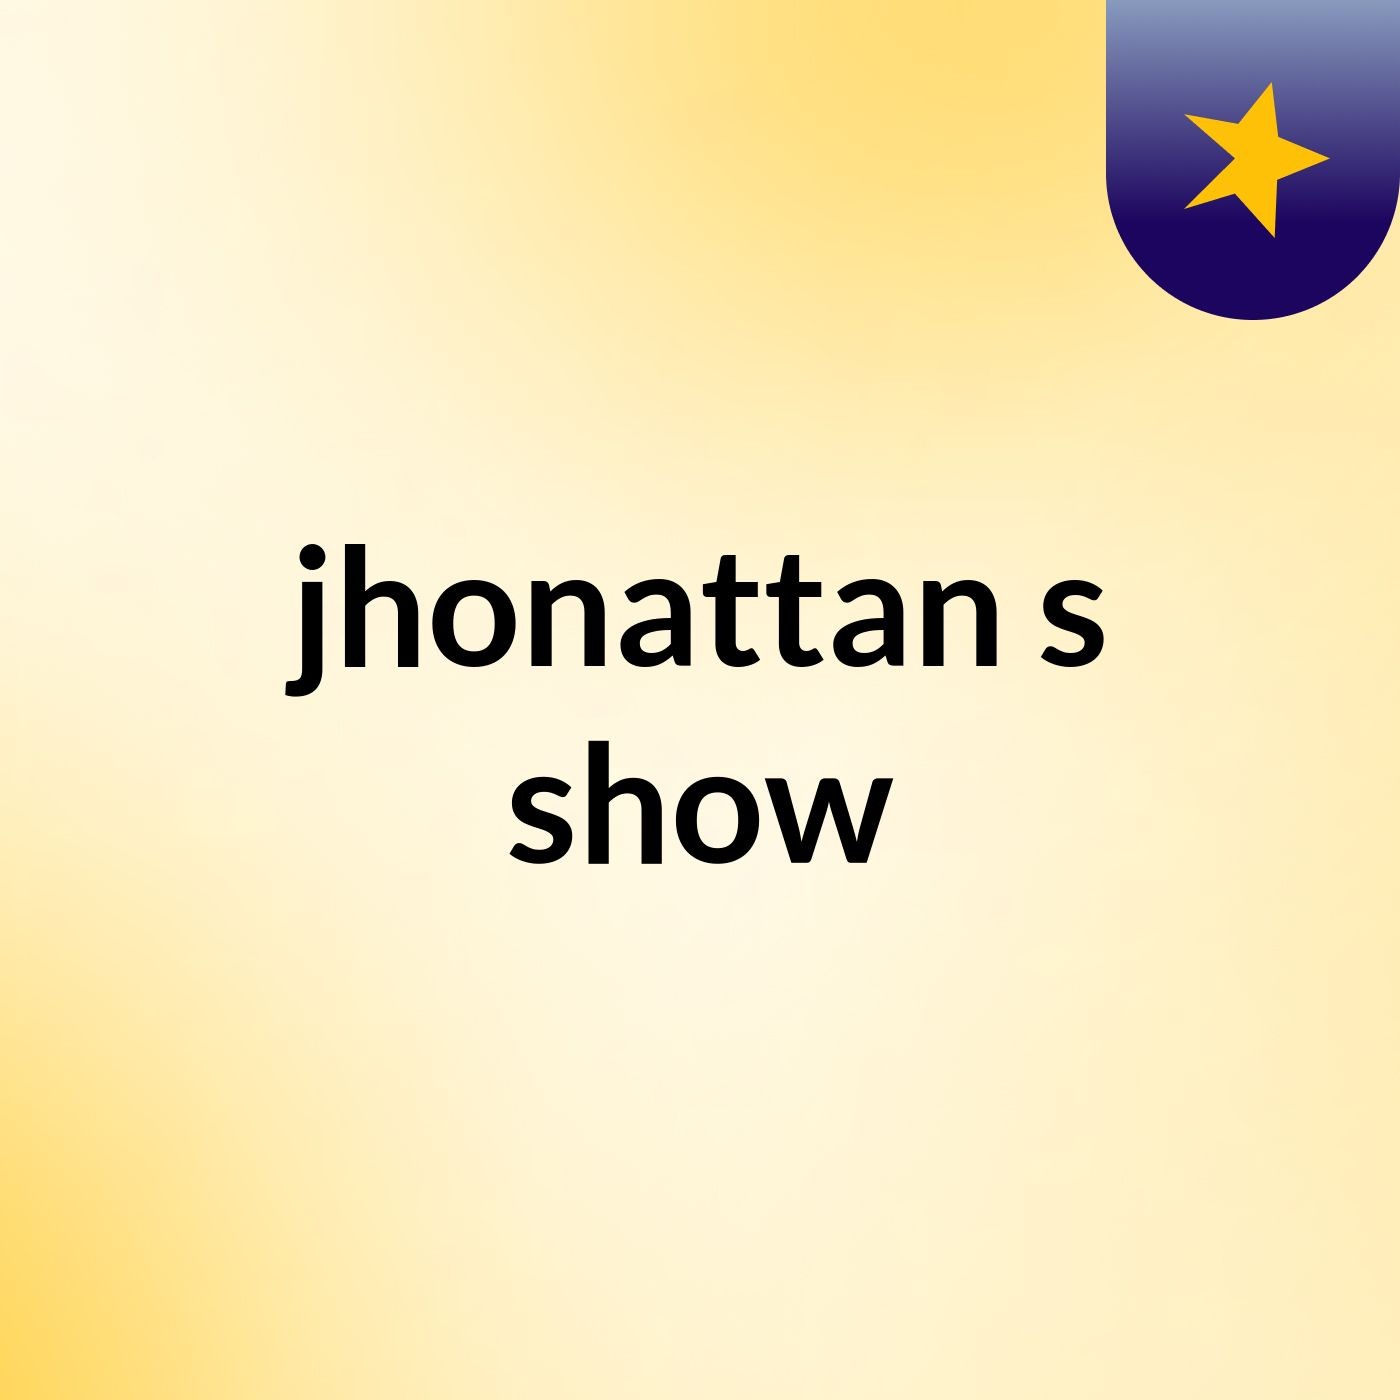 jhonattan's show